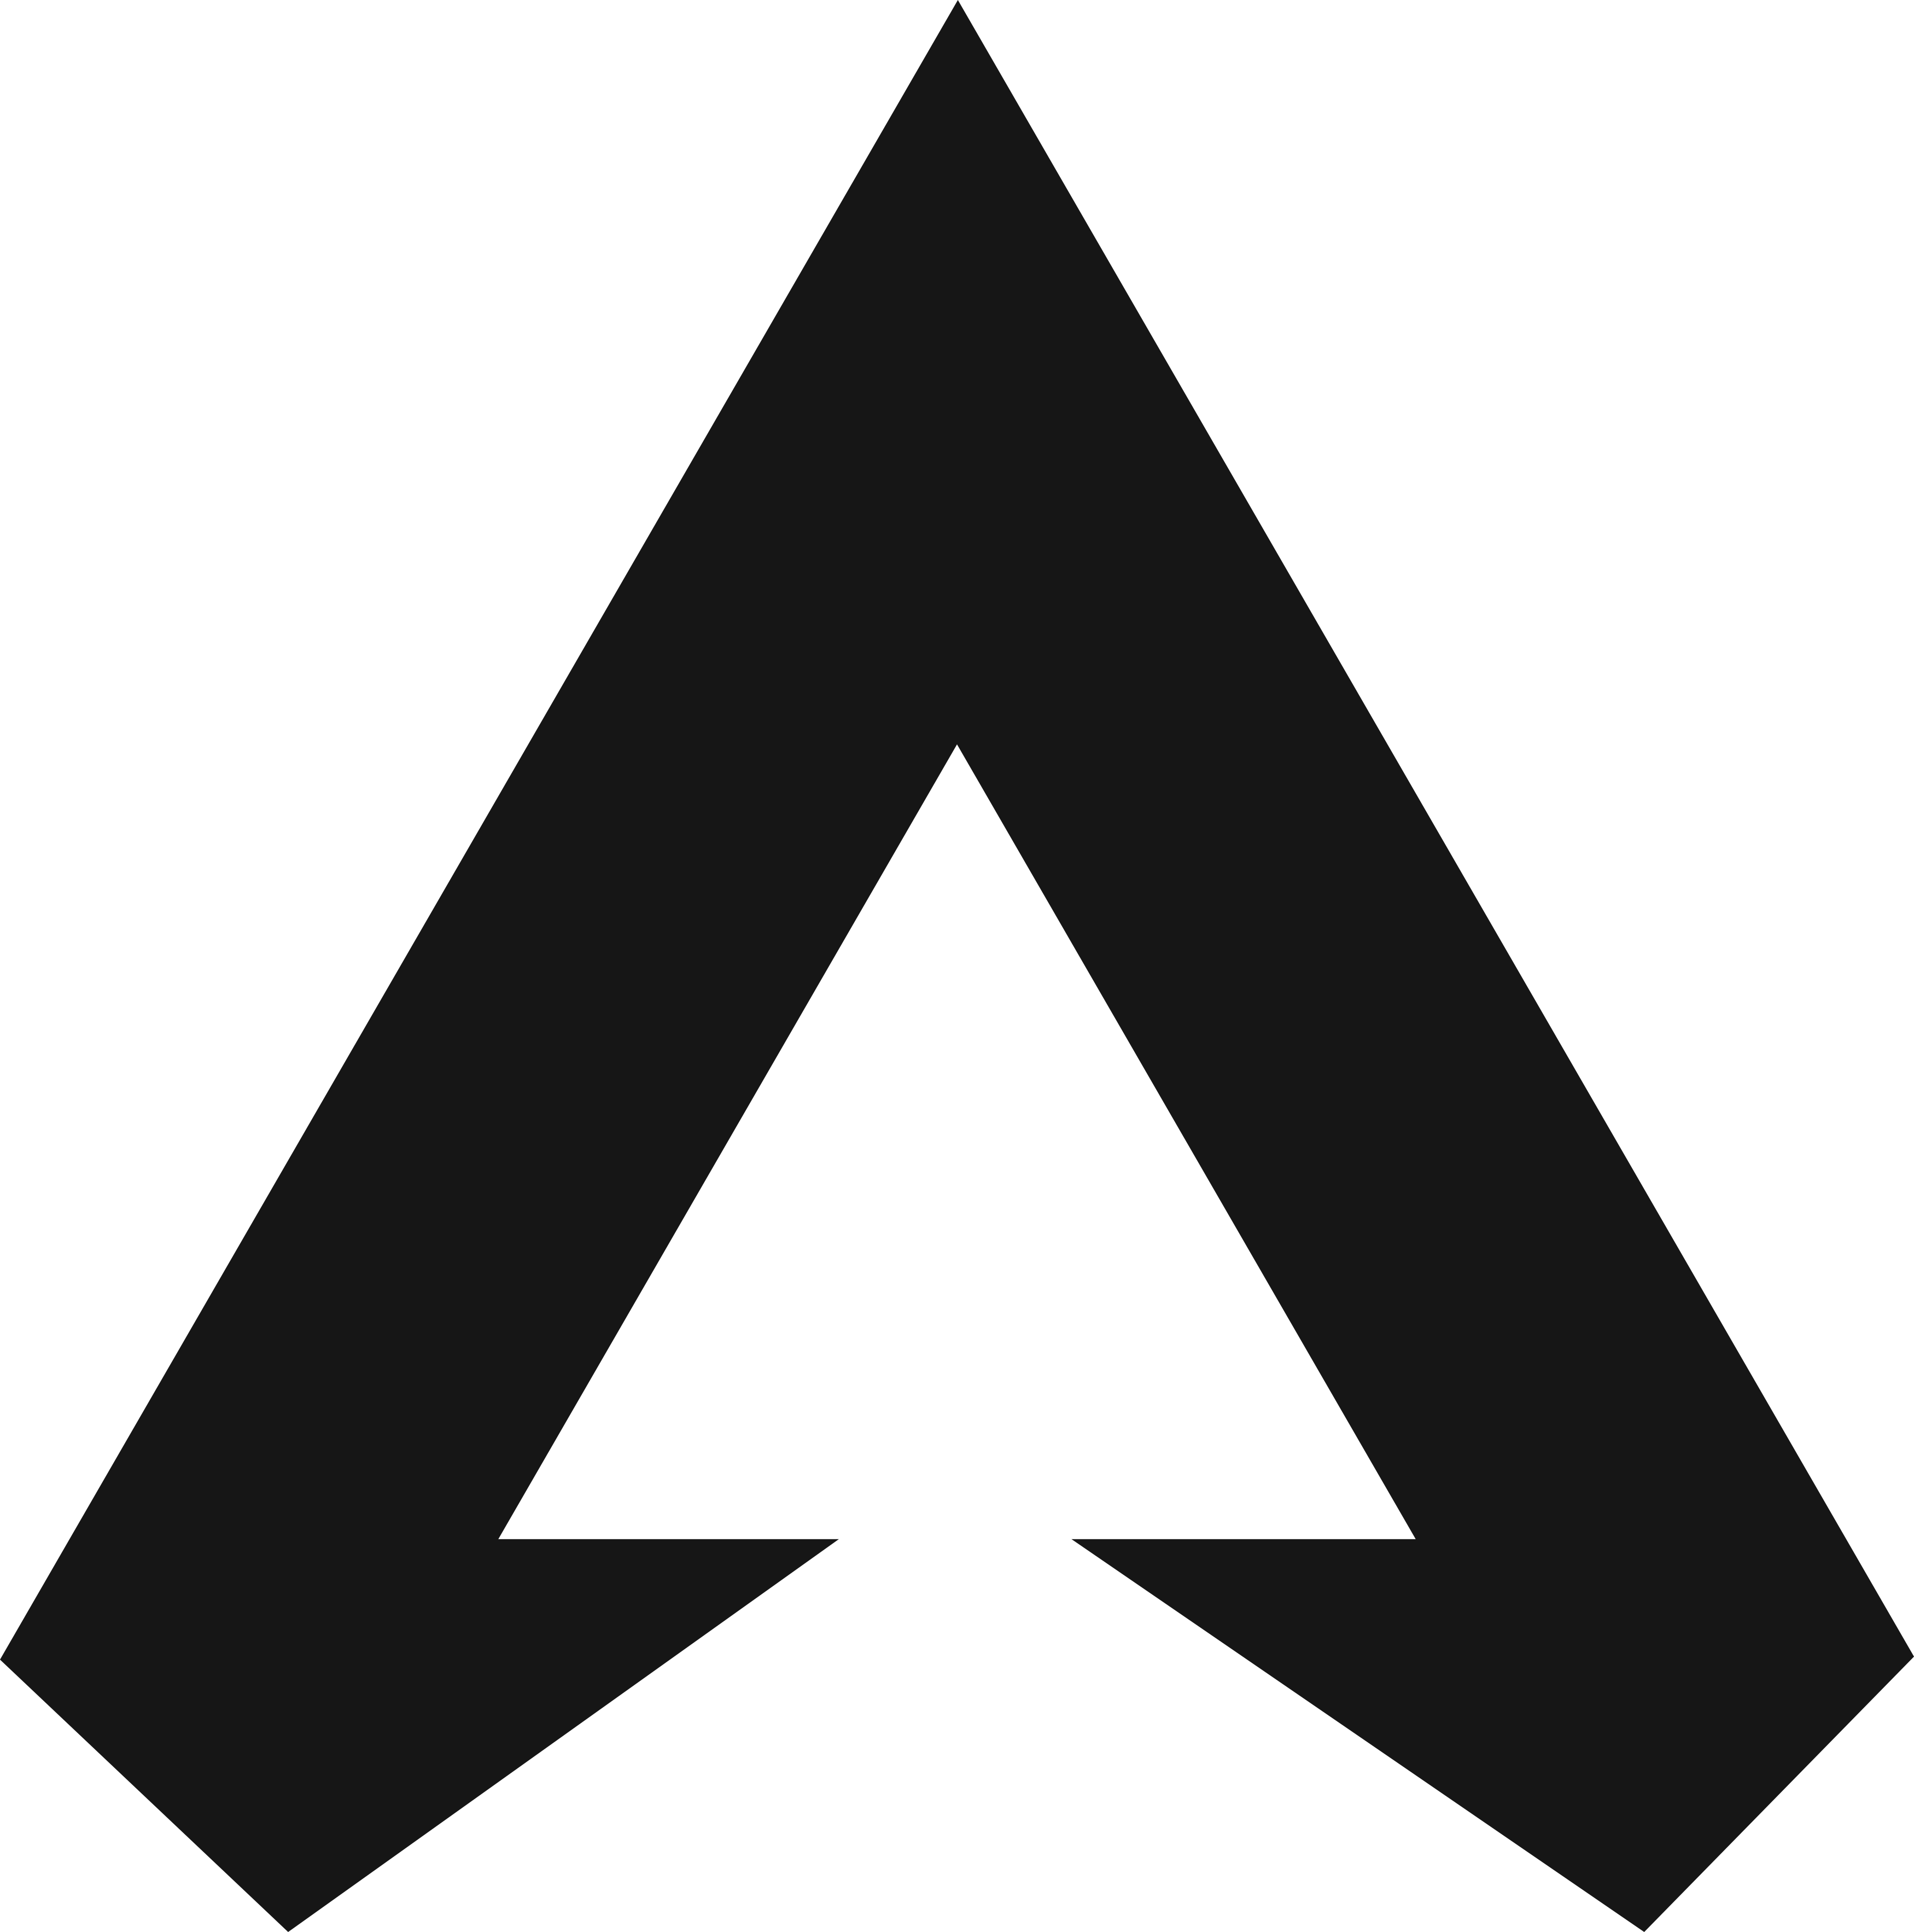 Apex Legends Logo PNG File